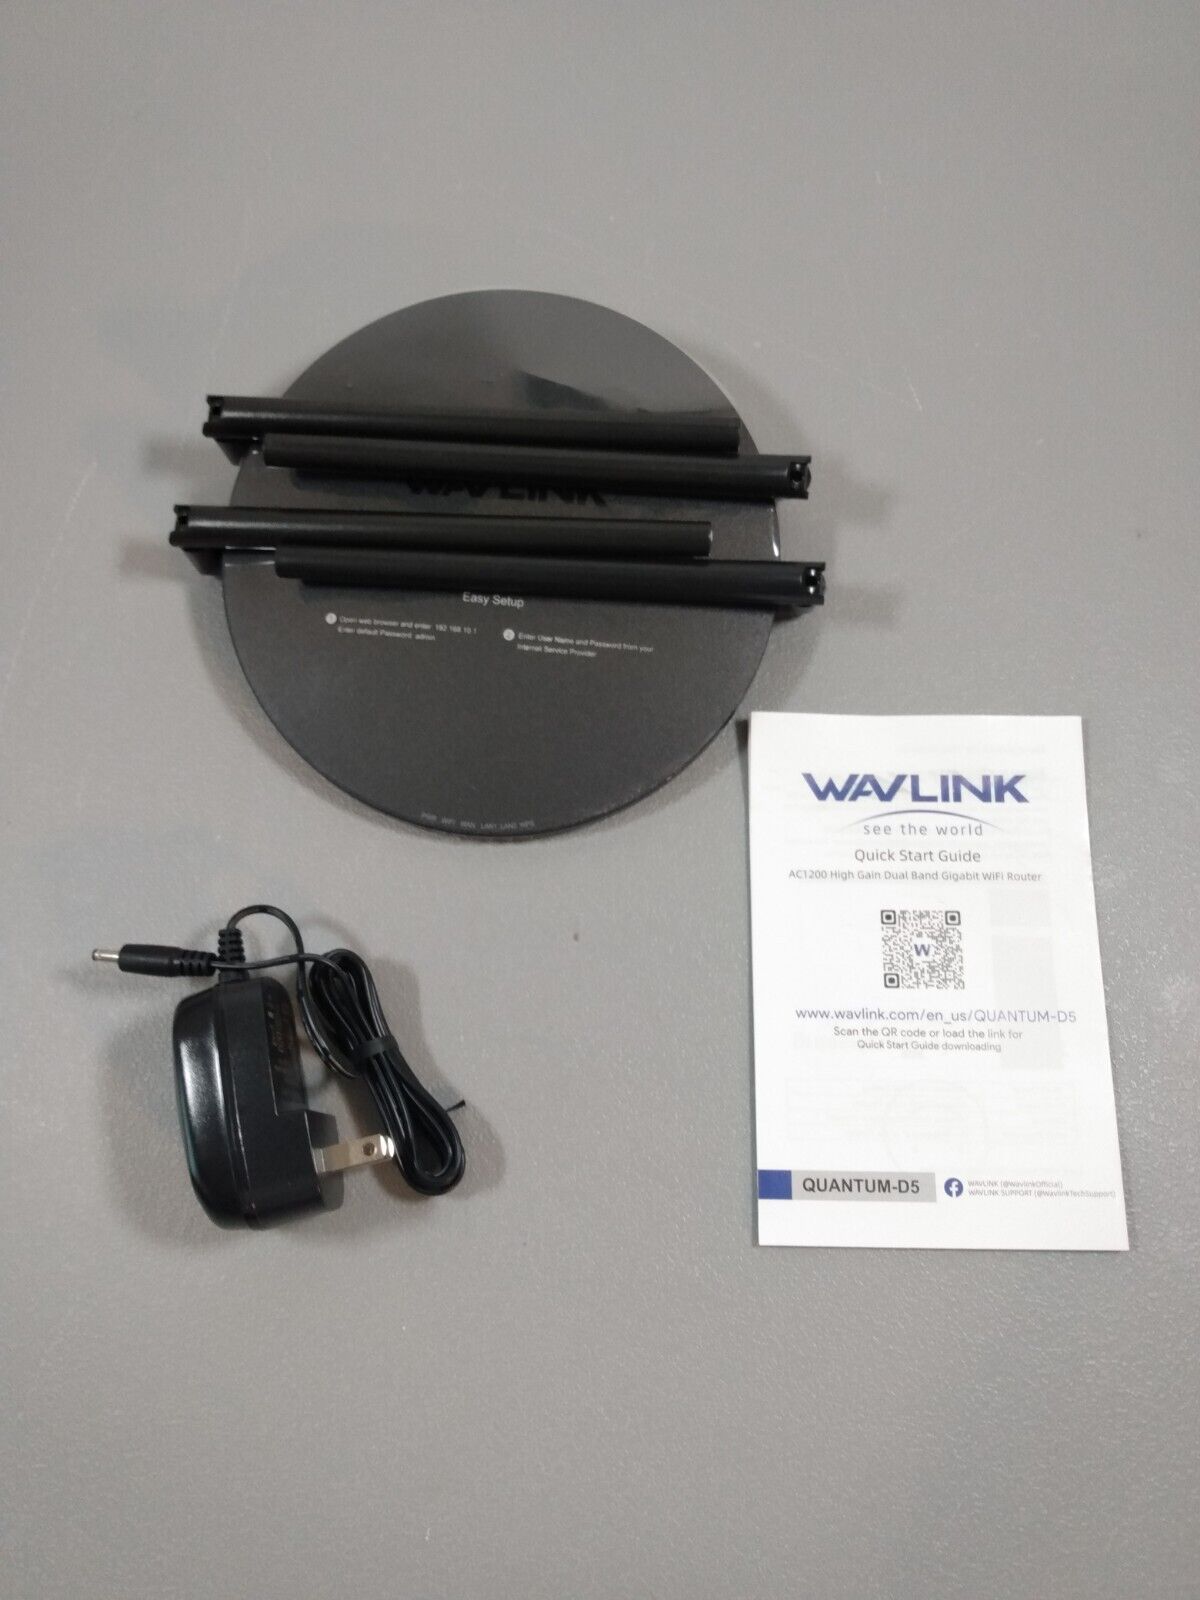 WAVLINK AC1200 Dual Band High Gain Full Gigabit Wi-Fi Router, Quantum-D5